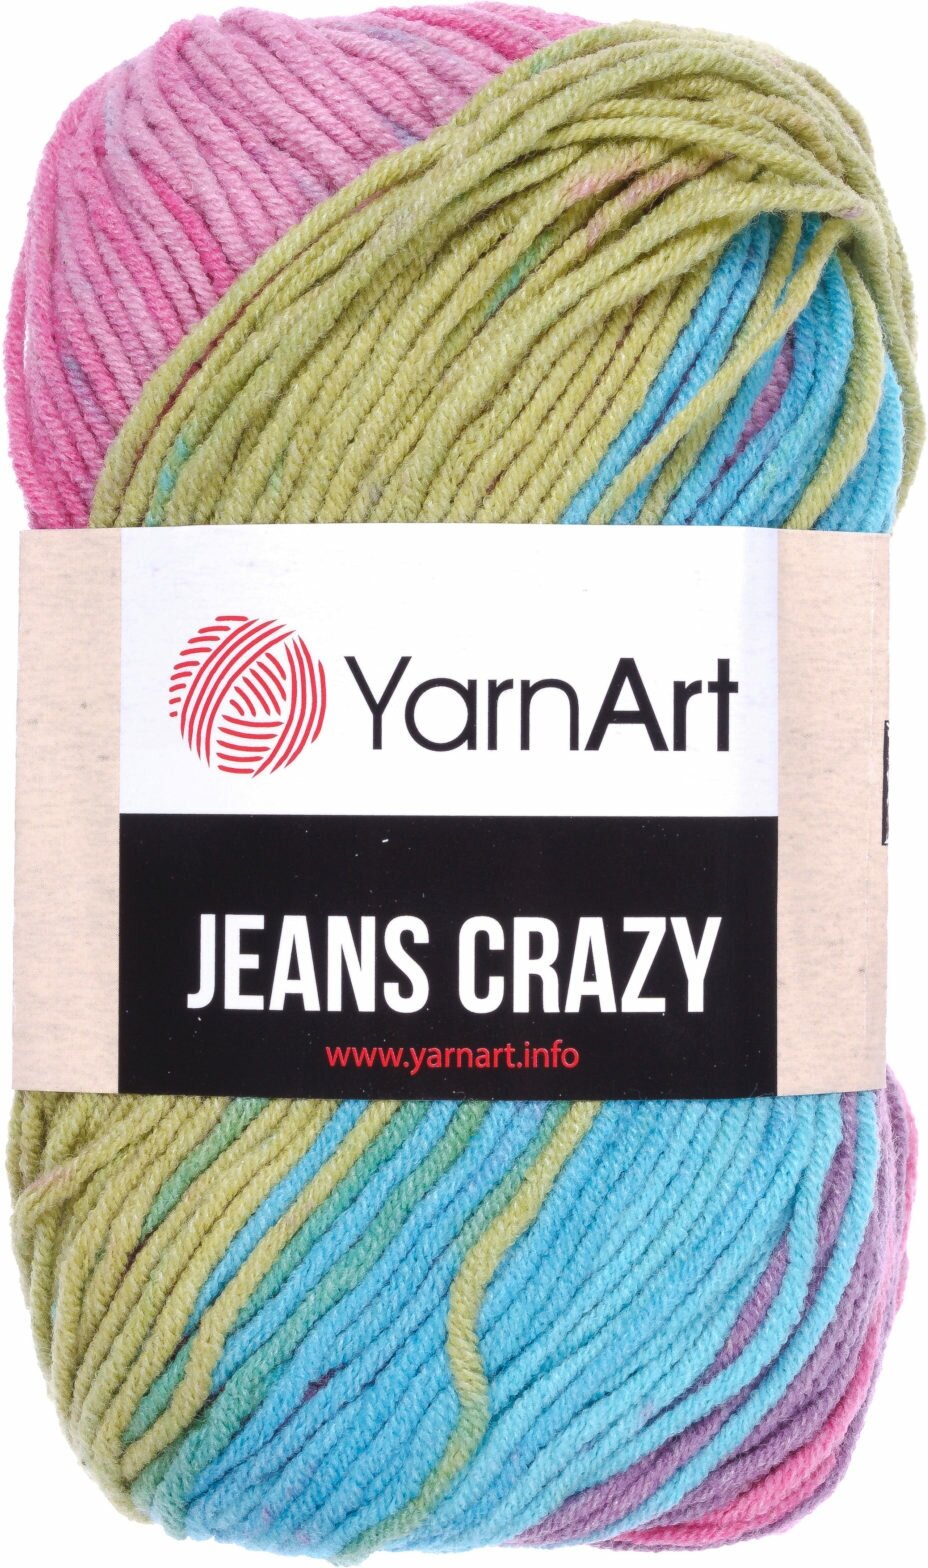 Пряжа YarnArt Jeans CRAZY бирюзовый-липа-розовый-сиреневый батик (8211), 55%хлопок/45%акрил, 160м, 50г, 1шт